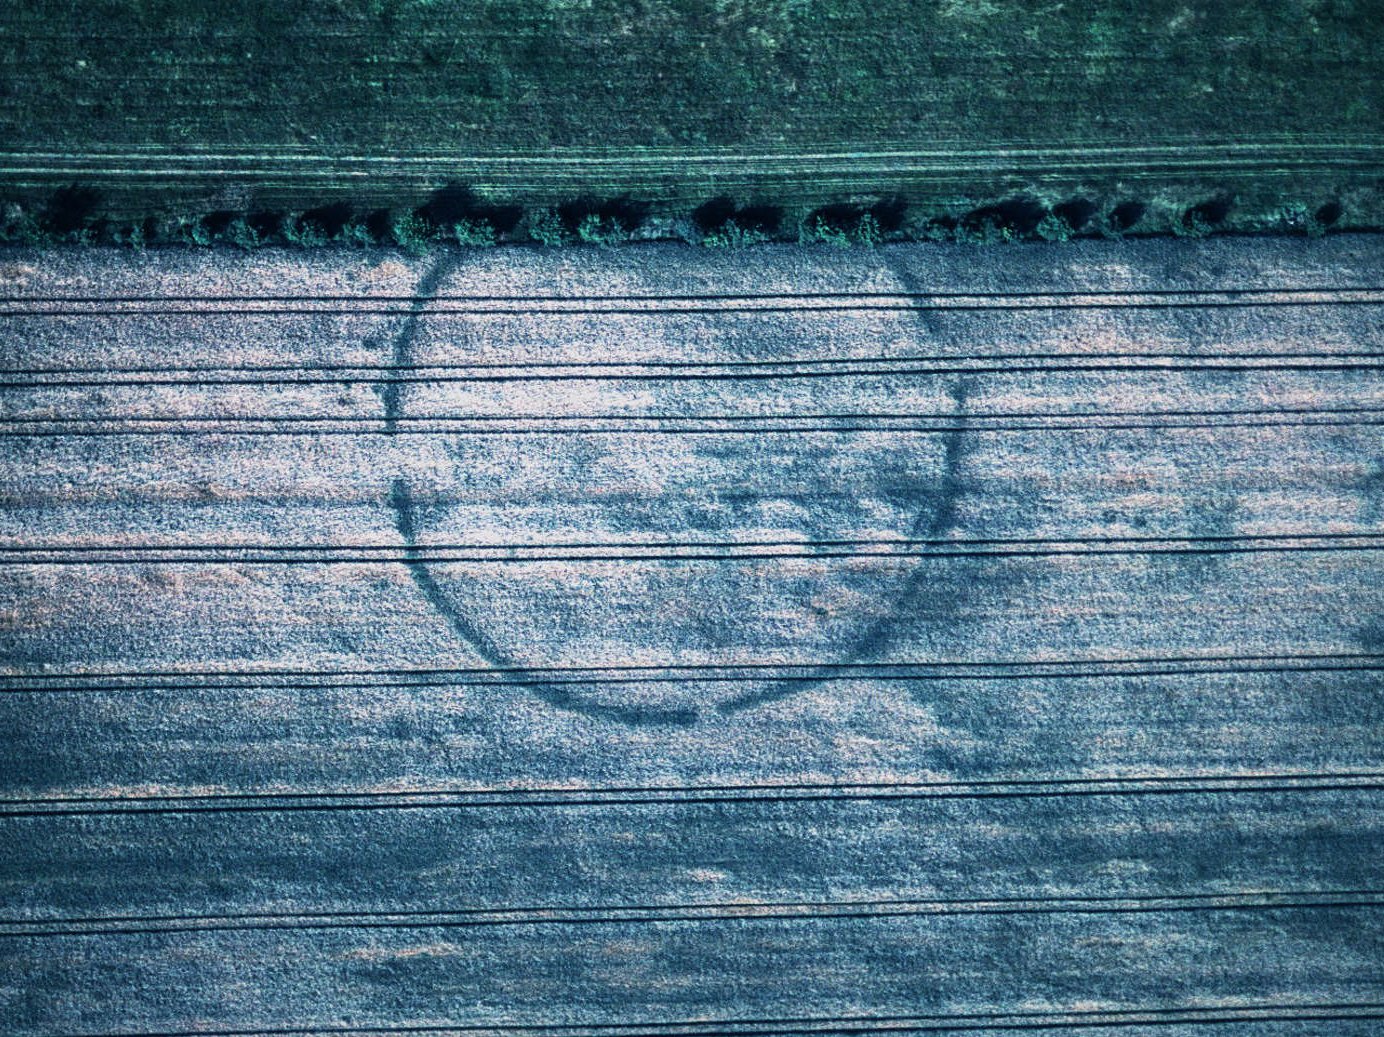 Luftbild der Kreisgrabenanlage von Pömmelte. © LDA, Foto: Ralf Schwarz.